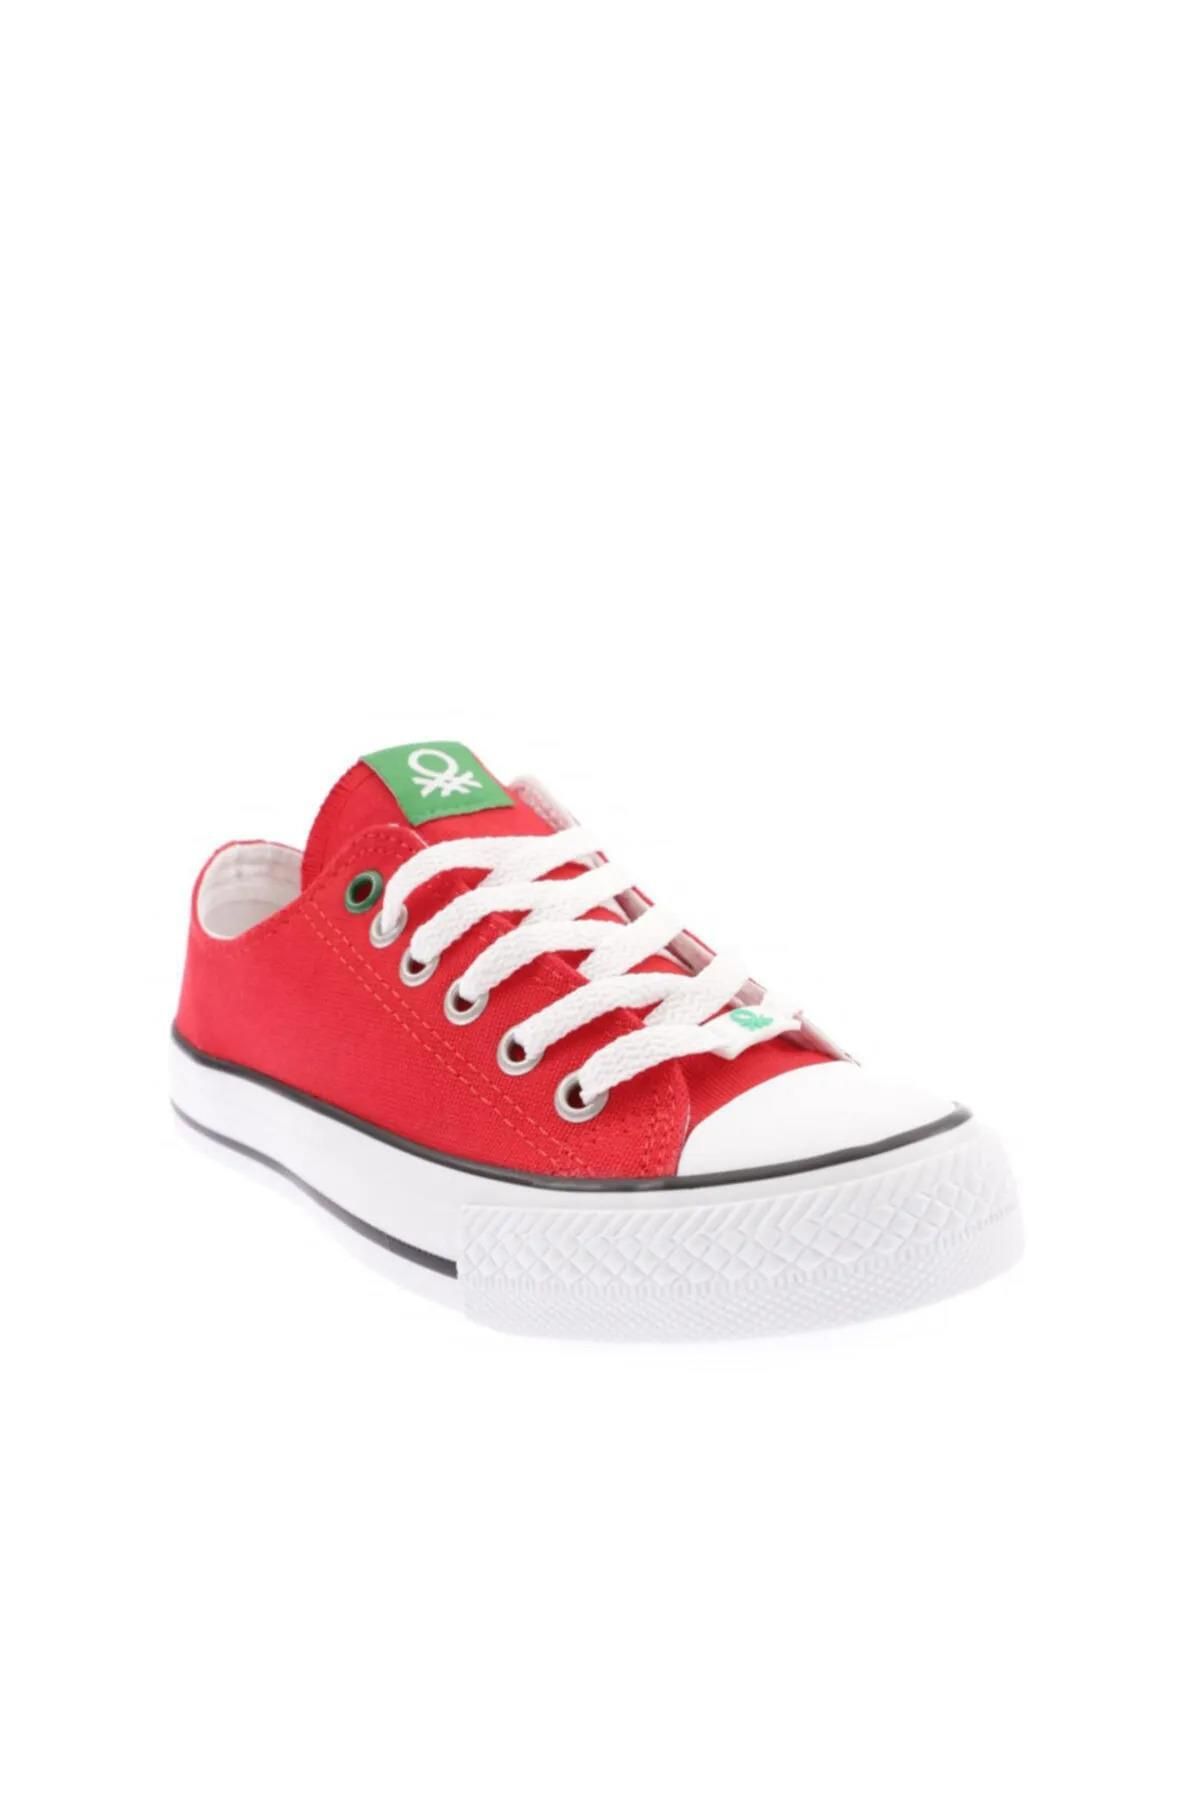 Benetton Bn-30196 Kadın Sneaker Spor Ayakkabı-kırmızı